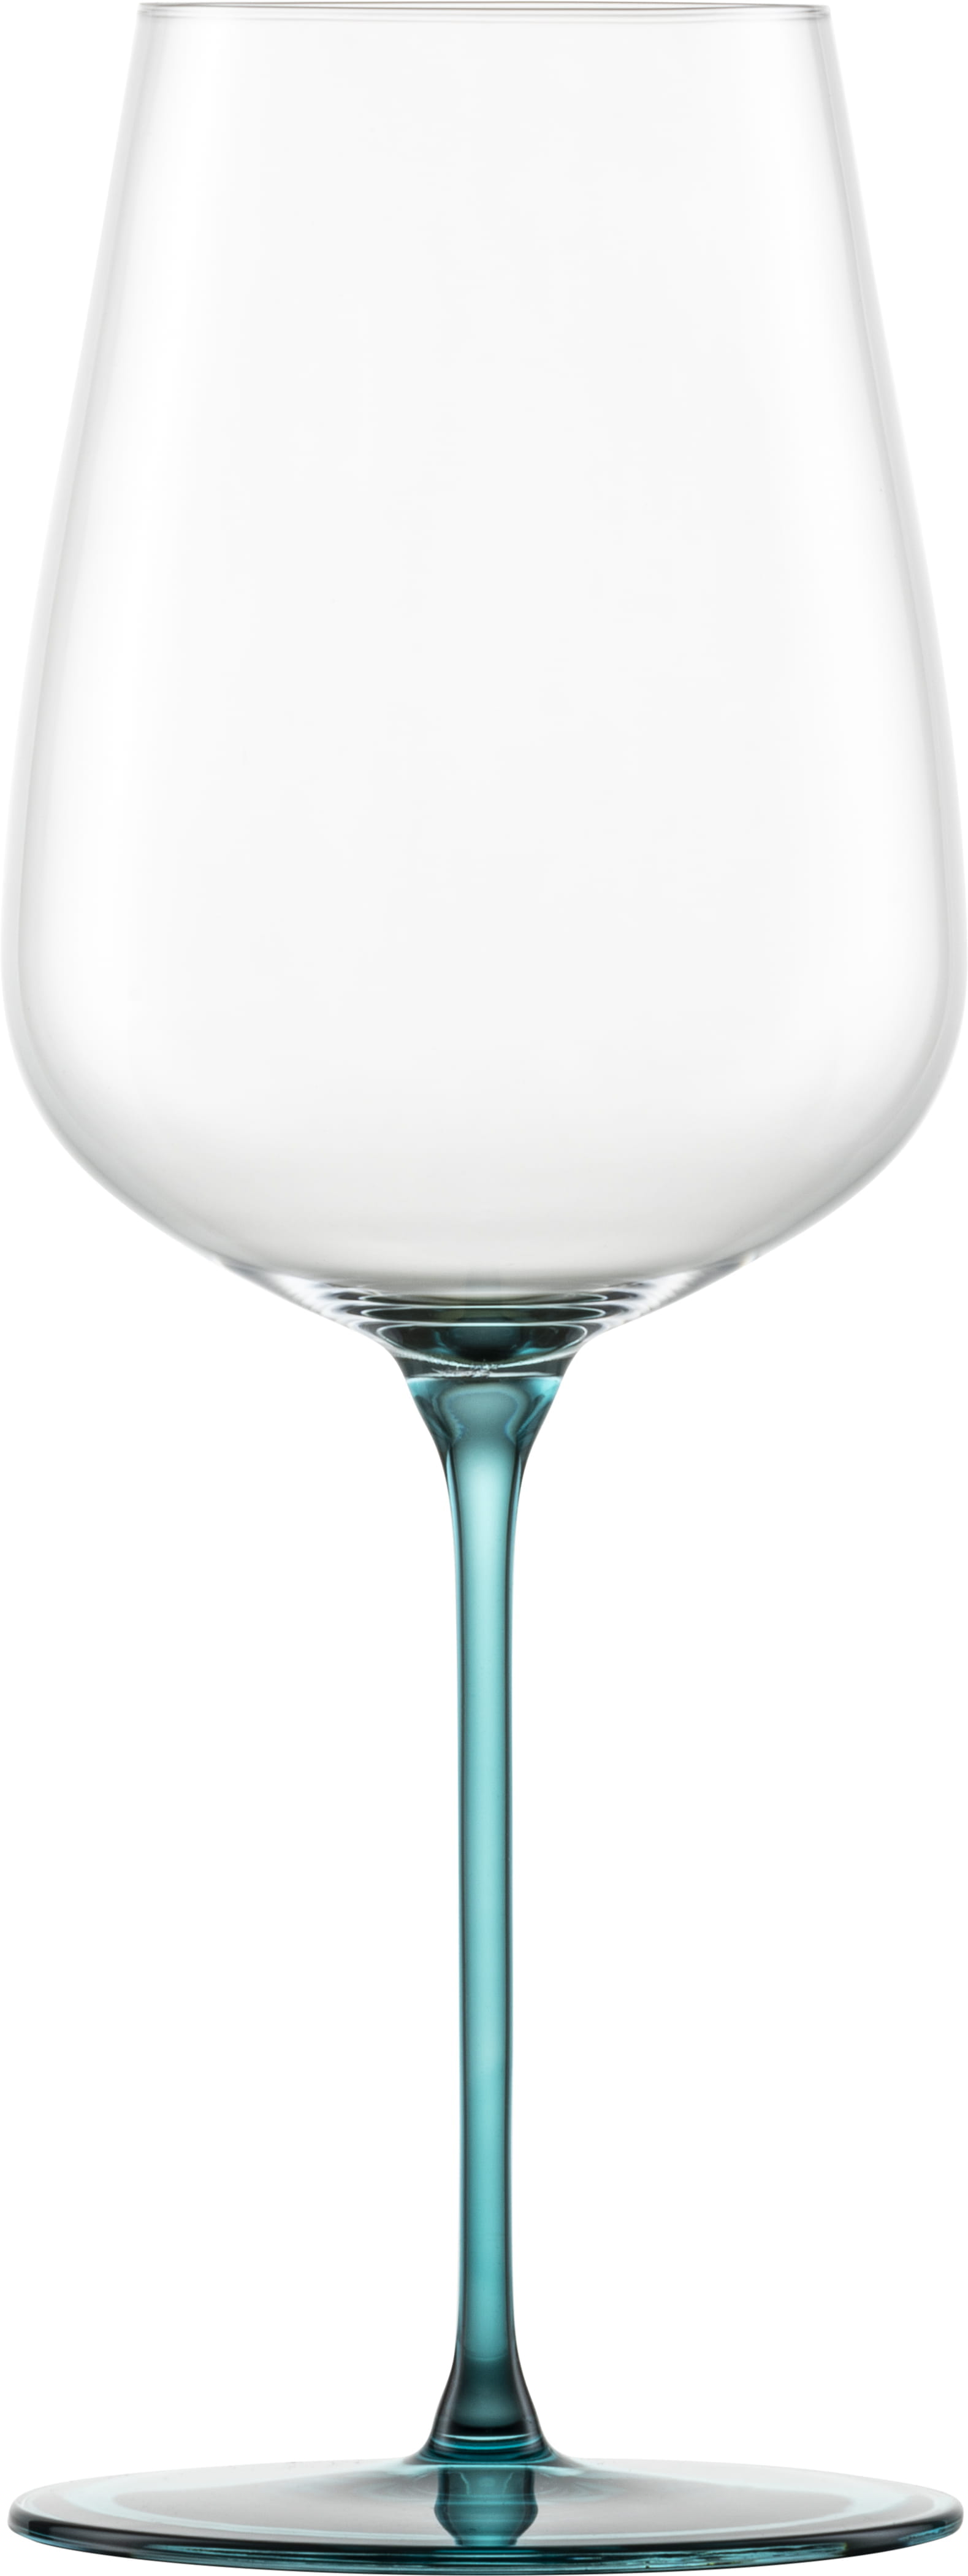 Eisch Glas Inspire Sensisplus 2 Allroundgläser 543/3 Aqua fruchtig & aromatisch